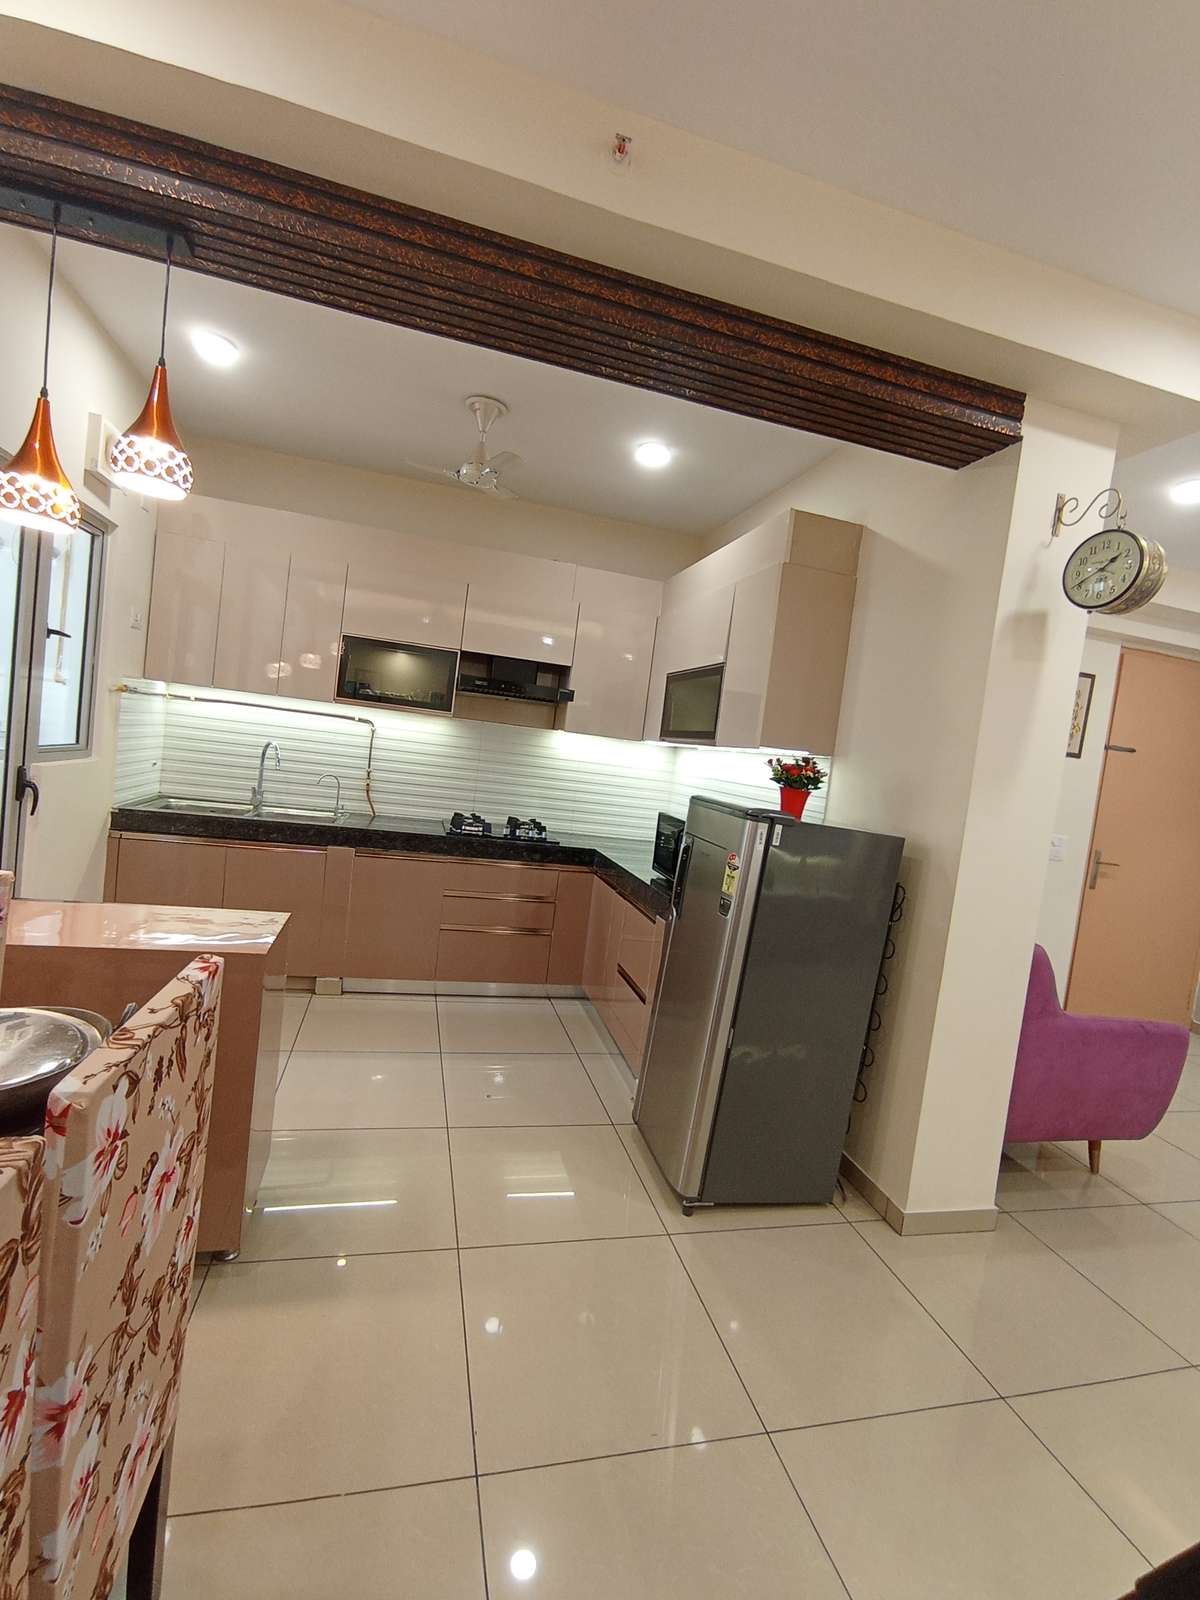 Kitchen, Lighting, Storage Designs by Interior Designer dreamz creatorz, Gautam Buddh Nagar | Kolo